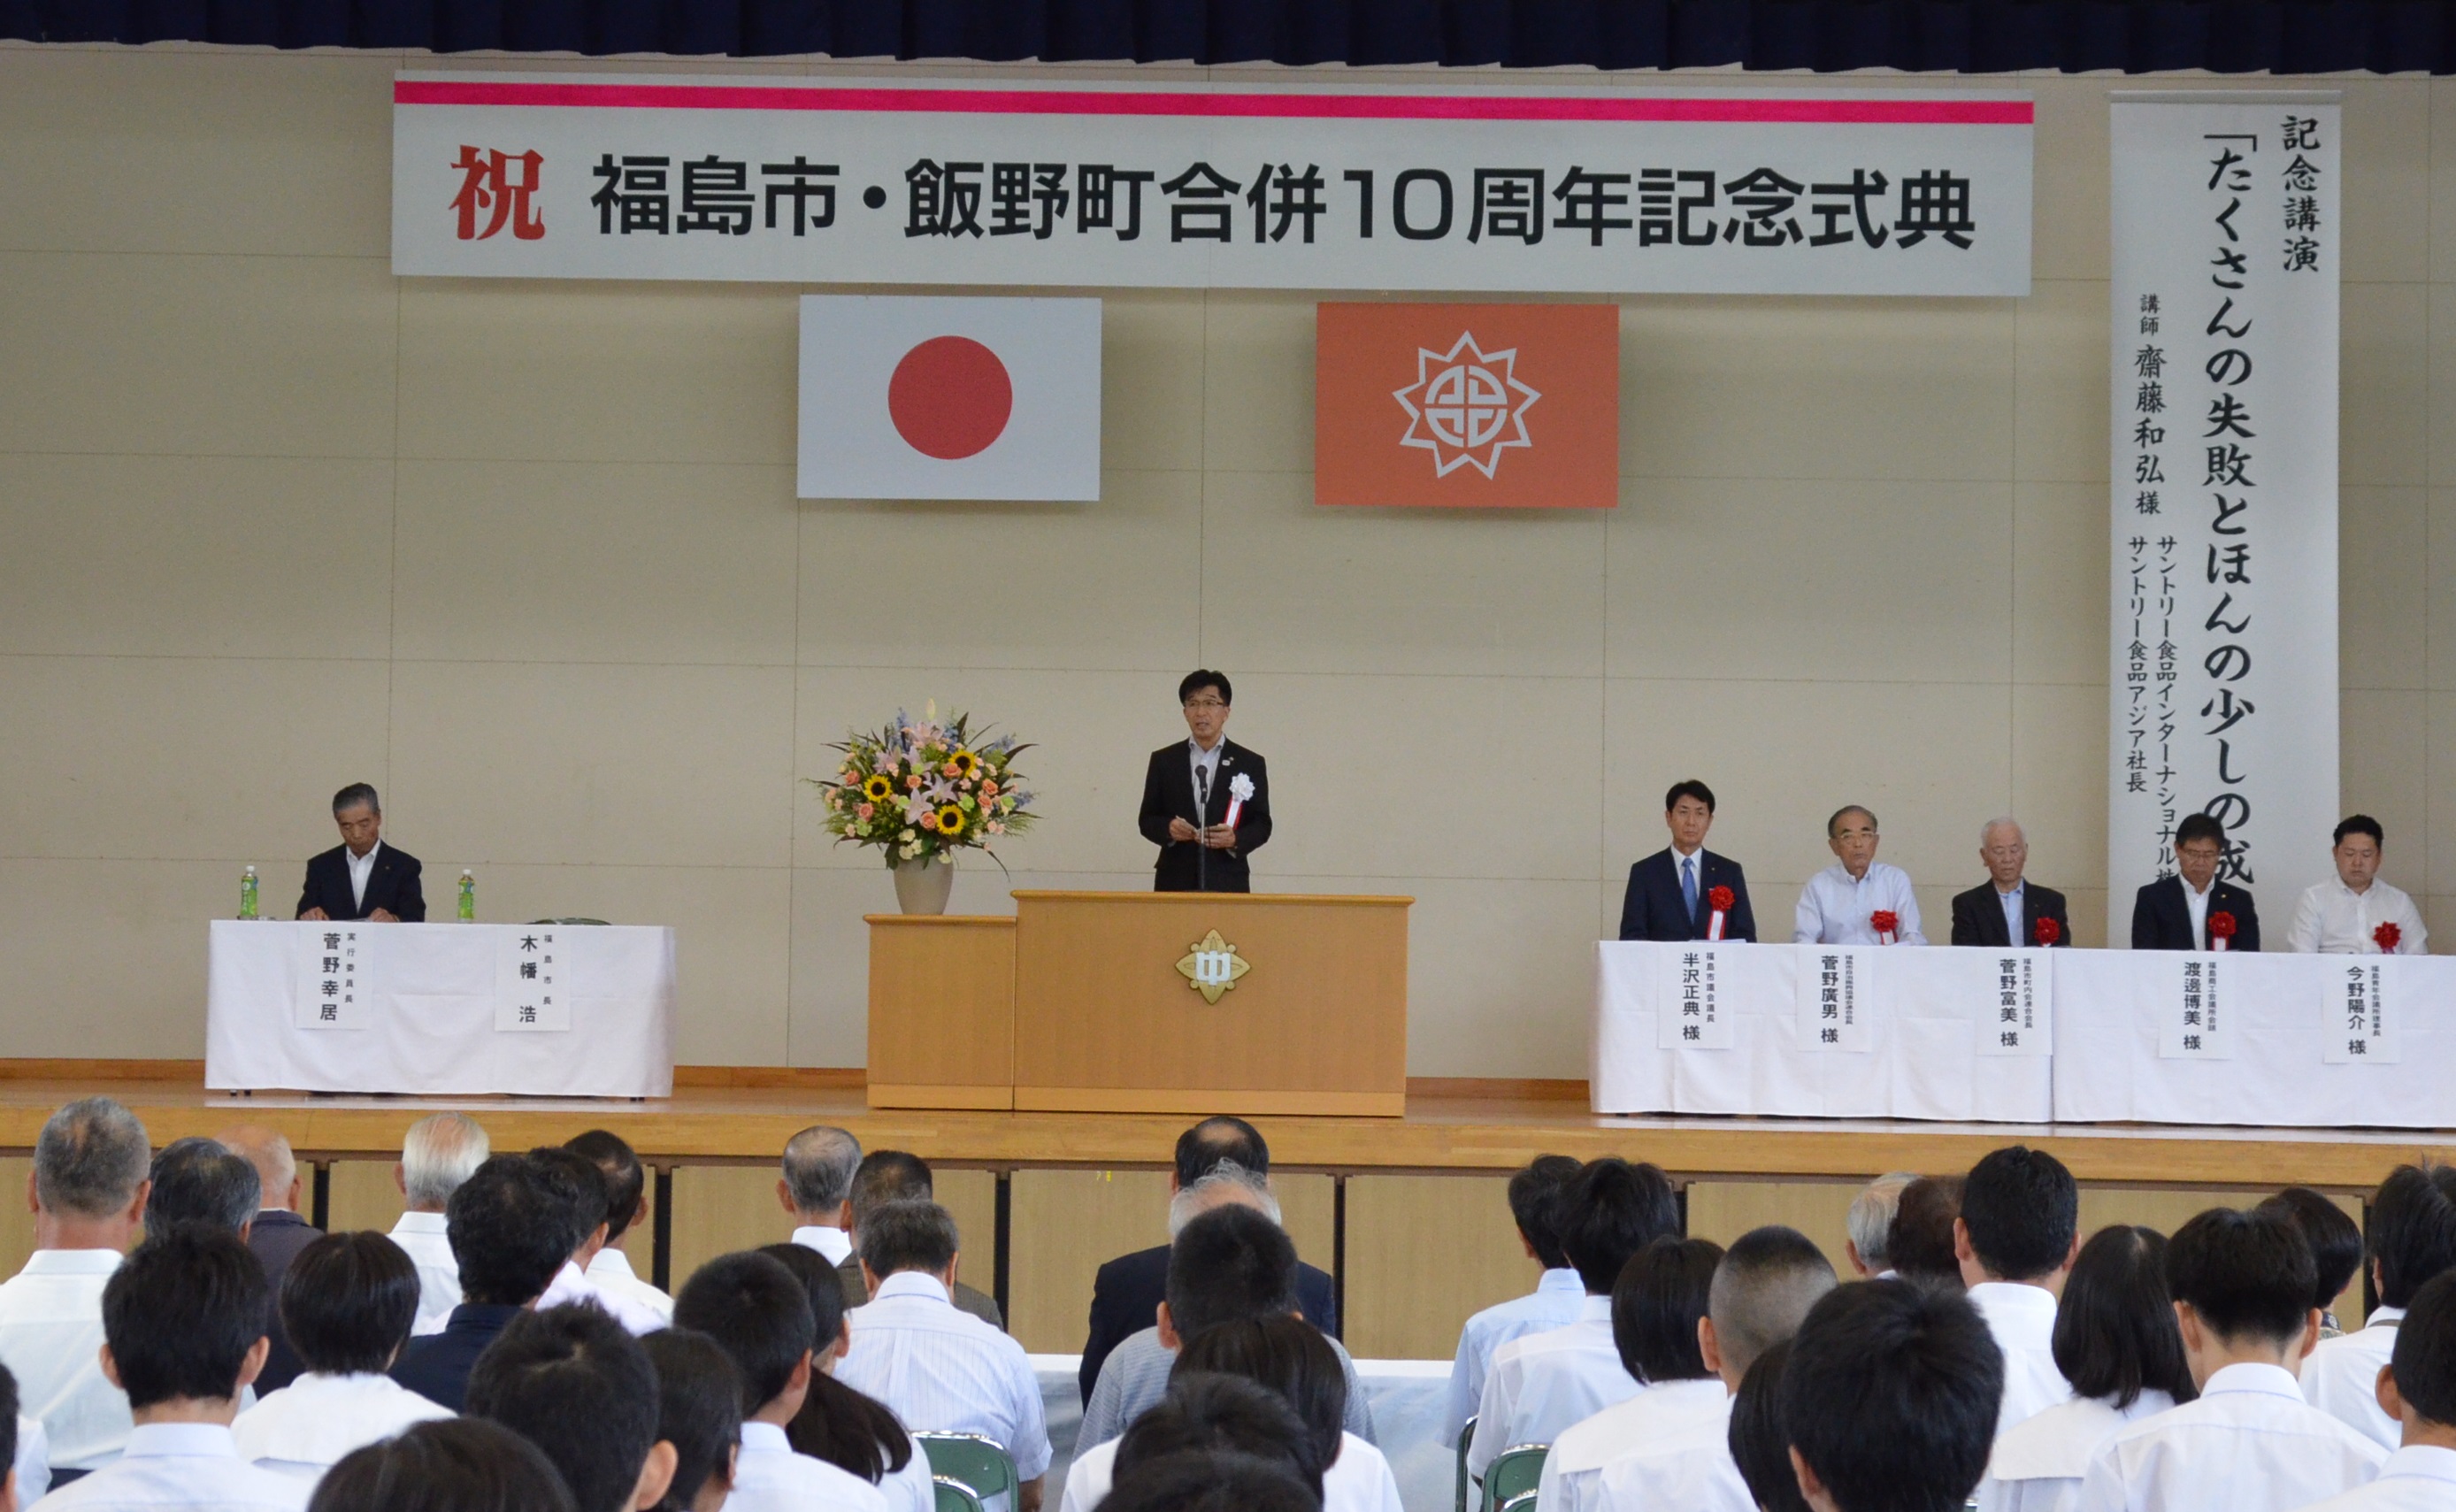 福島市・飯野町合併10周年記念式典で挨拶をする市長